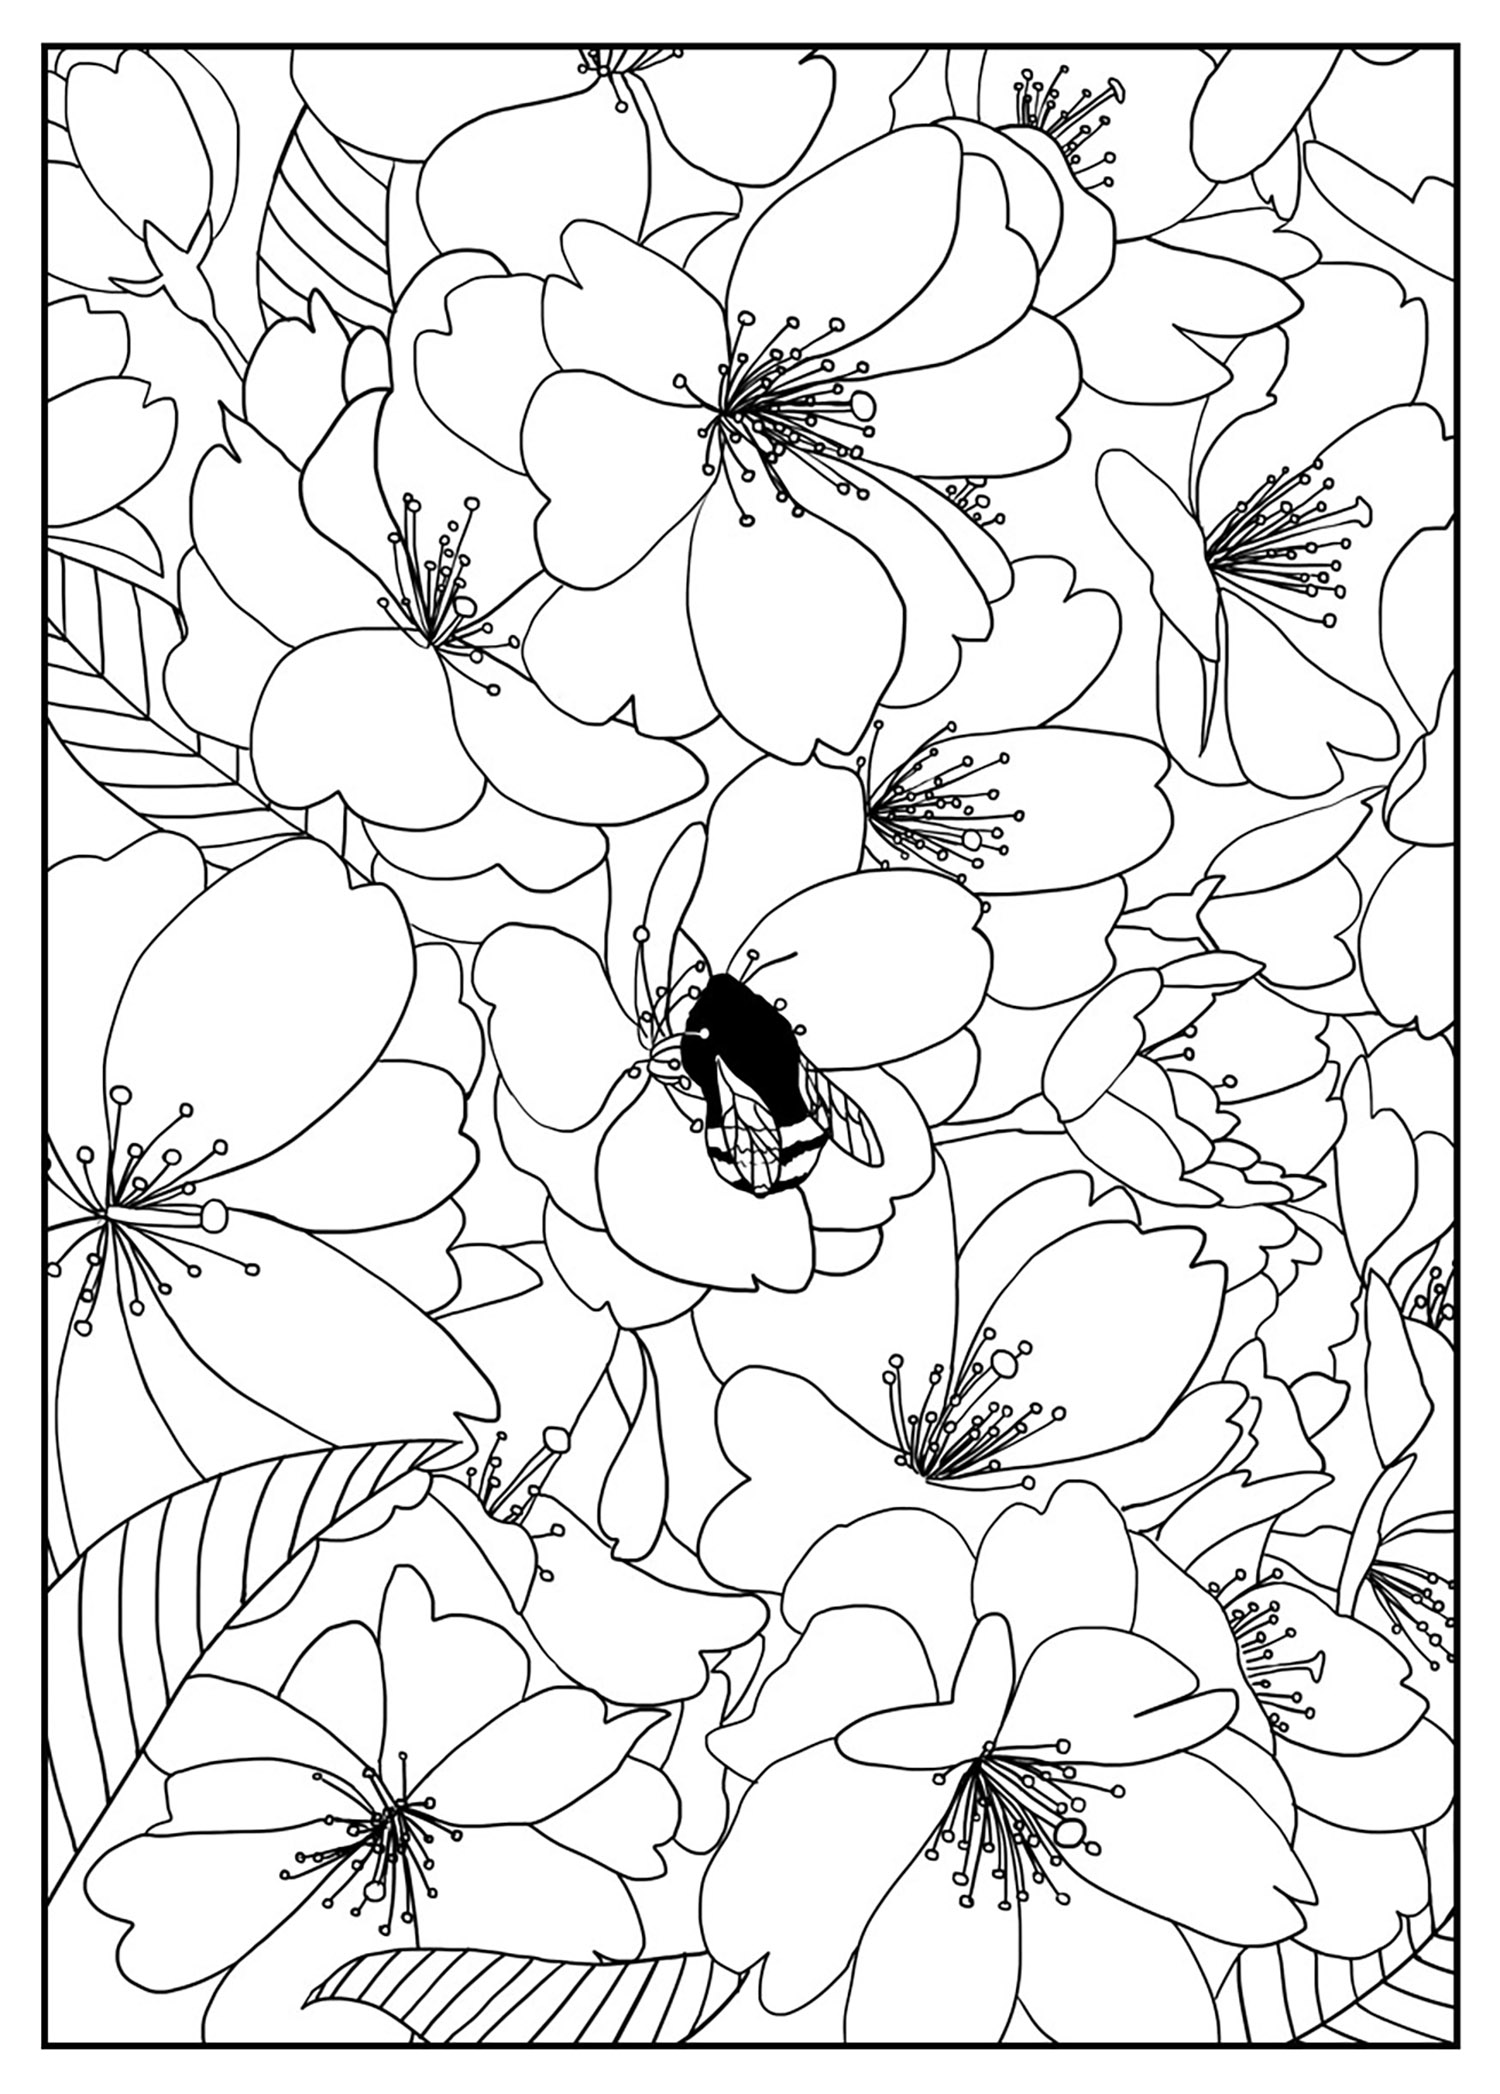 Graziosi fiori di ciliegio. Colorate questi bellissimi fiori di ciliegio, con il fiore centrale raccolto da una graziosa ape. Sta a voi decidere se colorare tutti i fiori con lo stesso colore, con colori completamente diversi o se lavorare con sfumature di un unico colore...